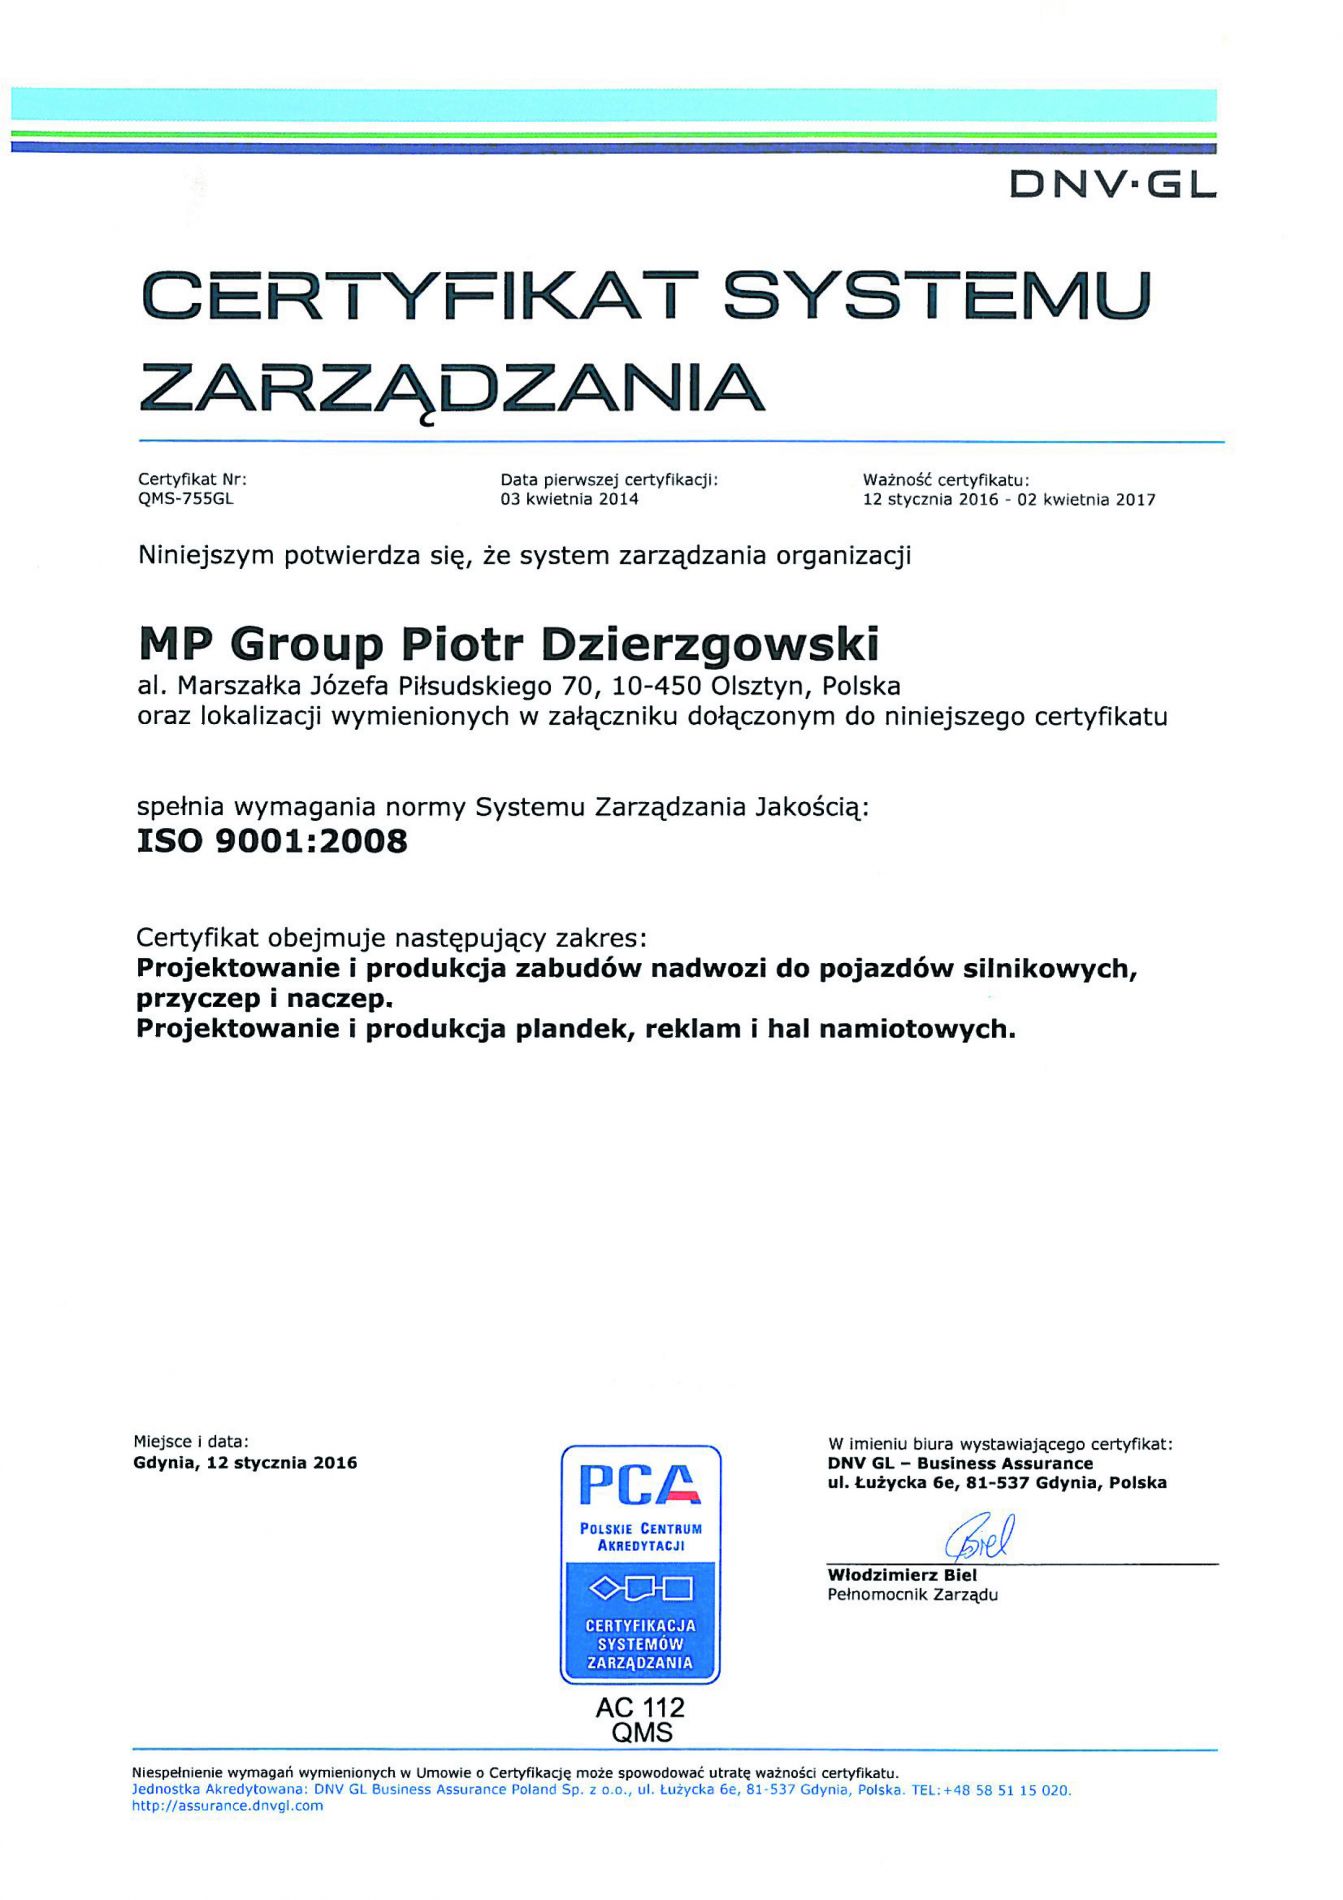 Certyfikat Systemu Zarządzania DNV-GL.